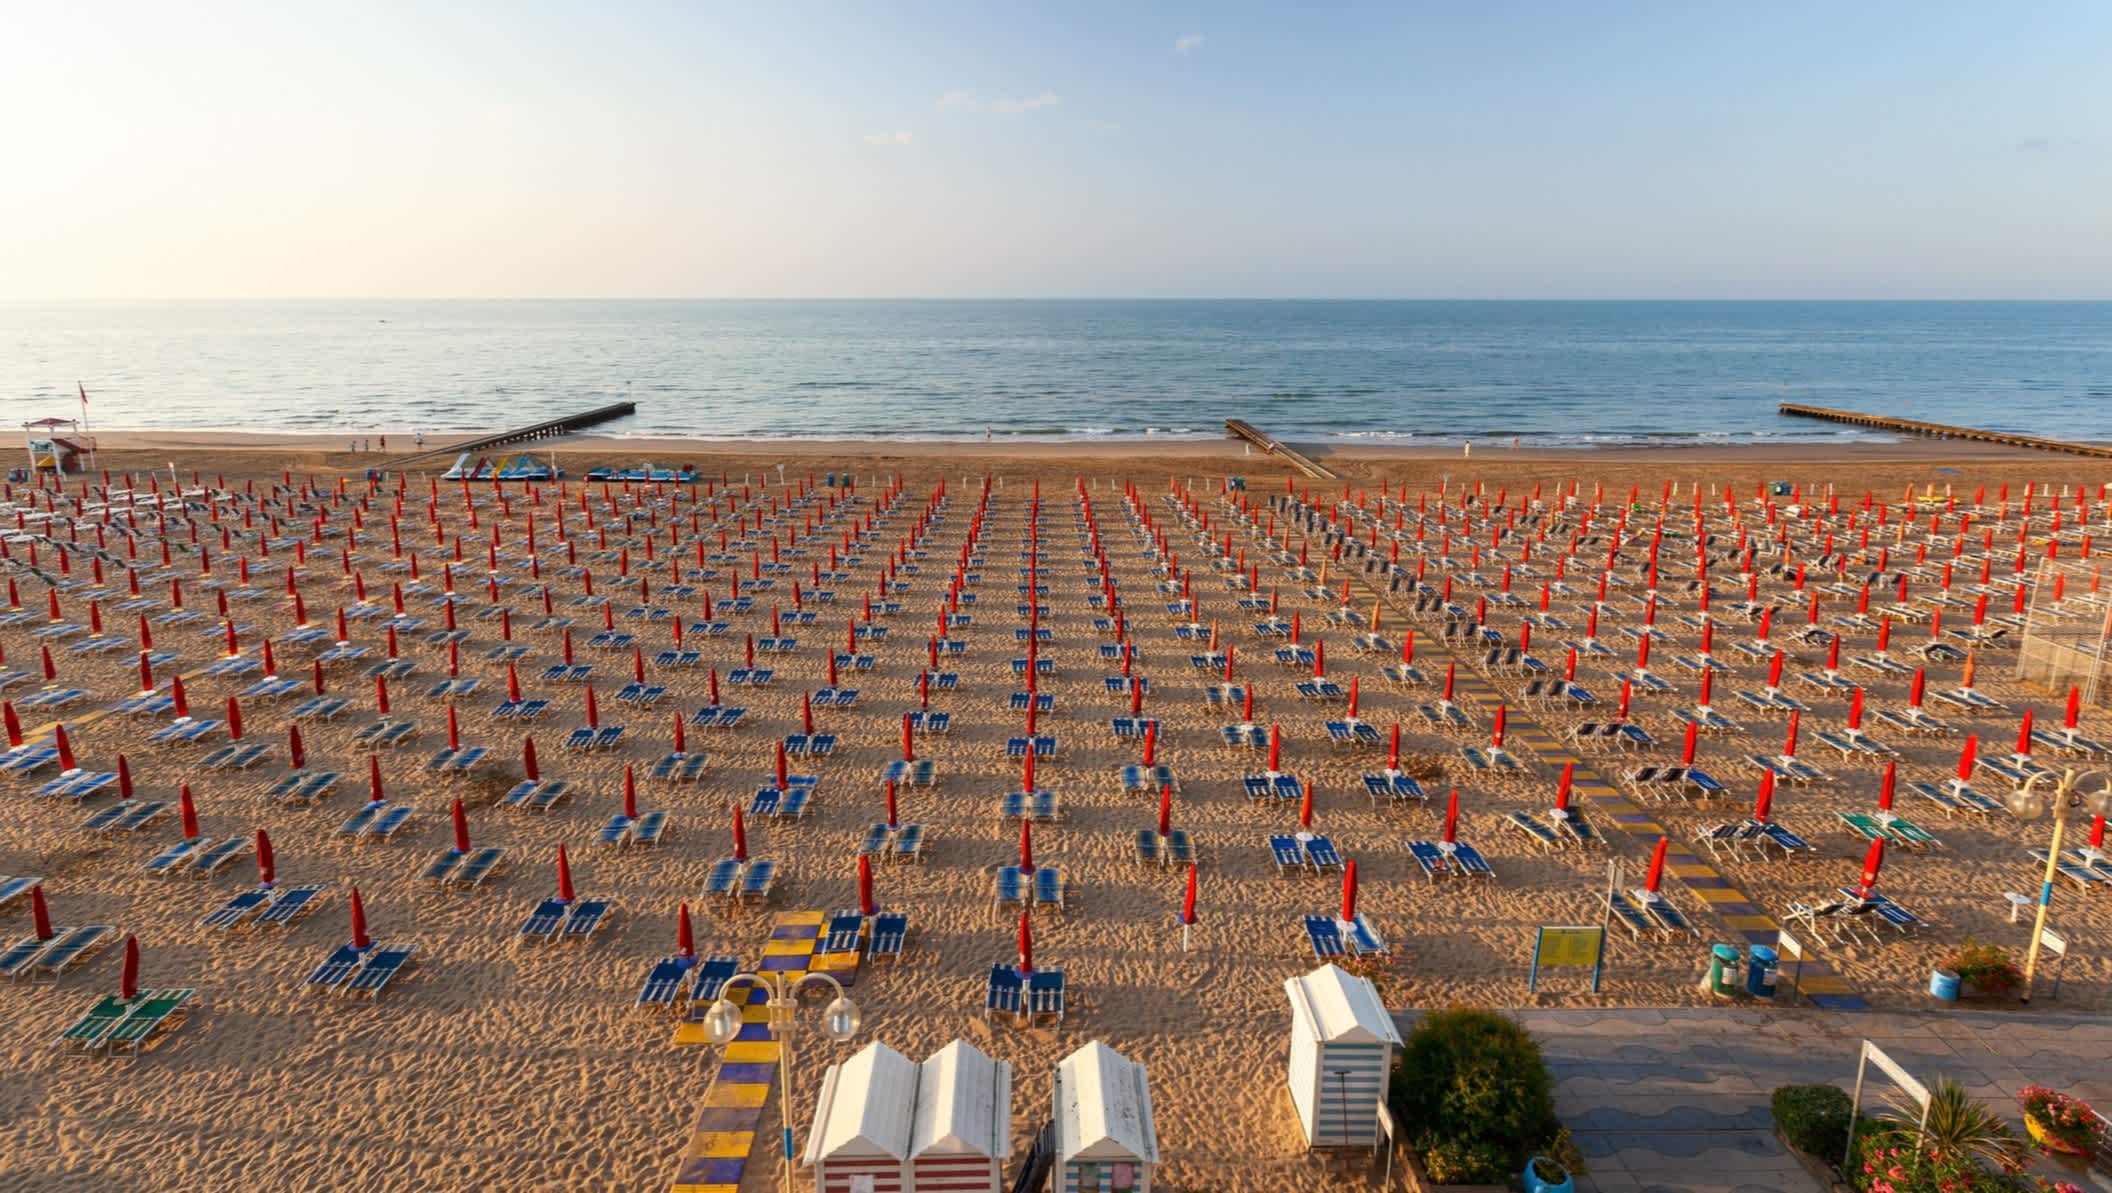 Vue sur la plage de Lido di Jesolo en Italie, avec des transats et parasols sur le sable au lever du soleil